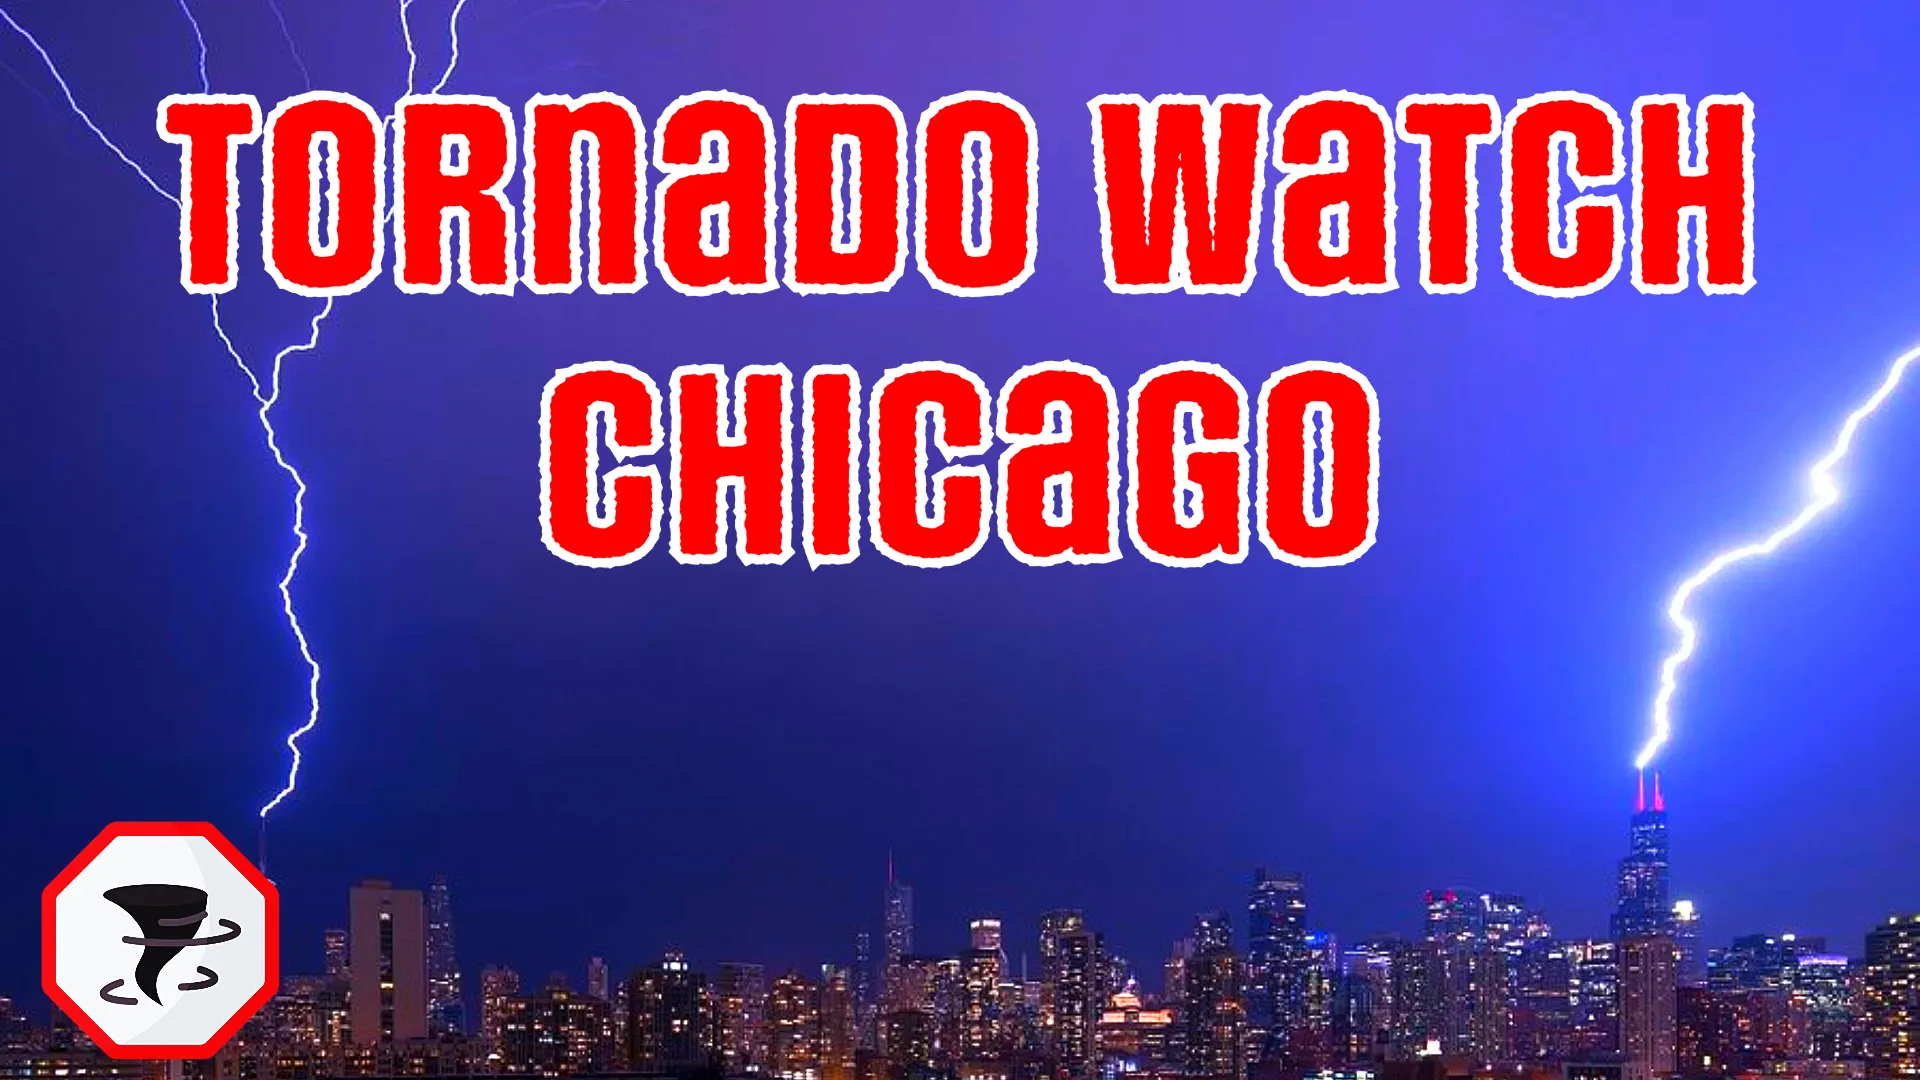 Chicago is under a tornado watch